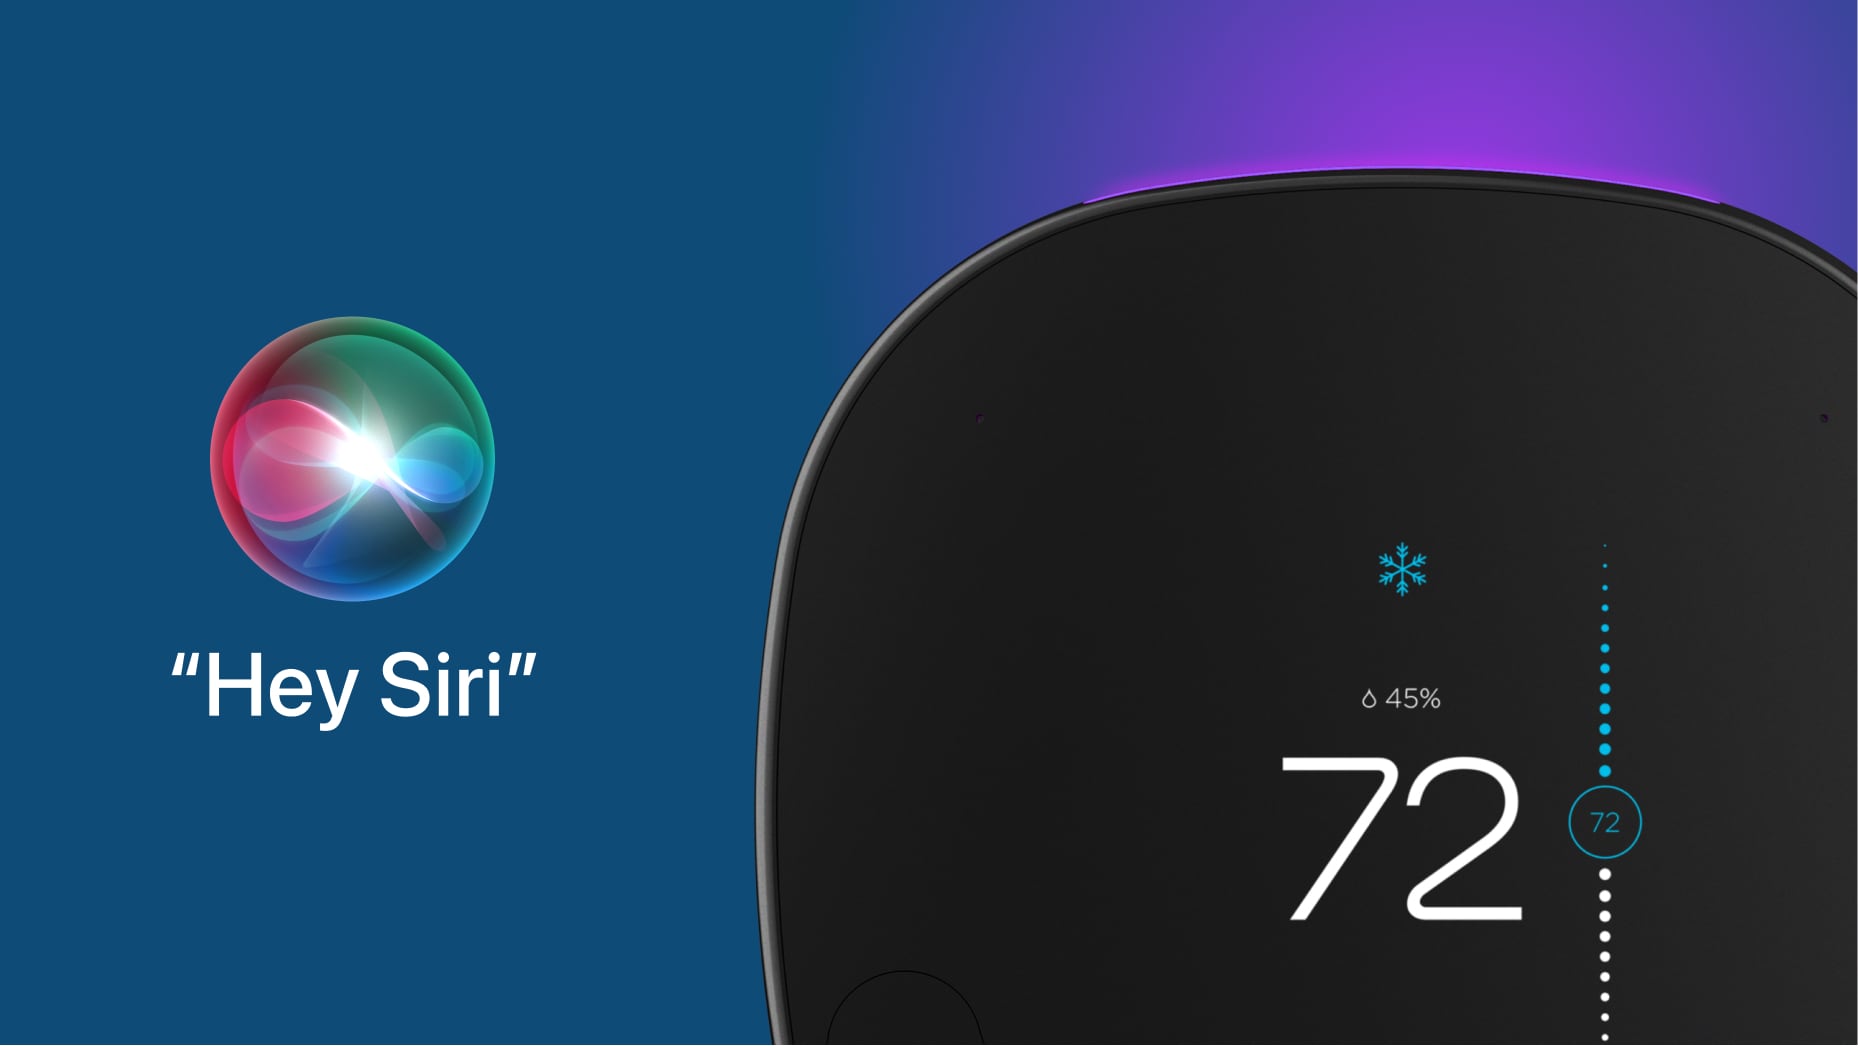 Une image marketing d'Ecobee montrant son thermostat intelligent et l'orbe Hey Siri sur un dégradé bleu/rose